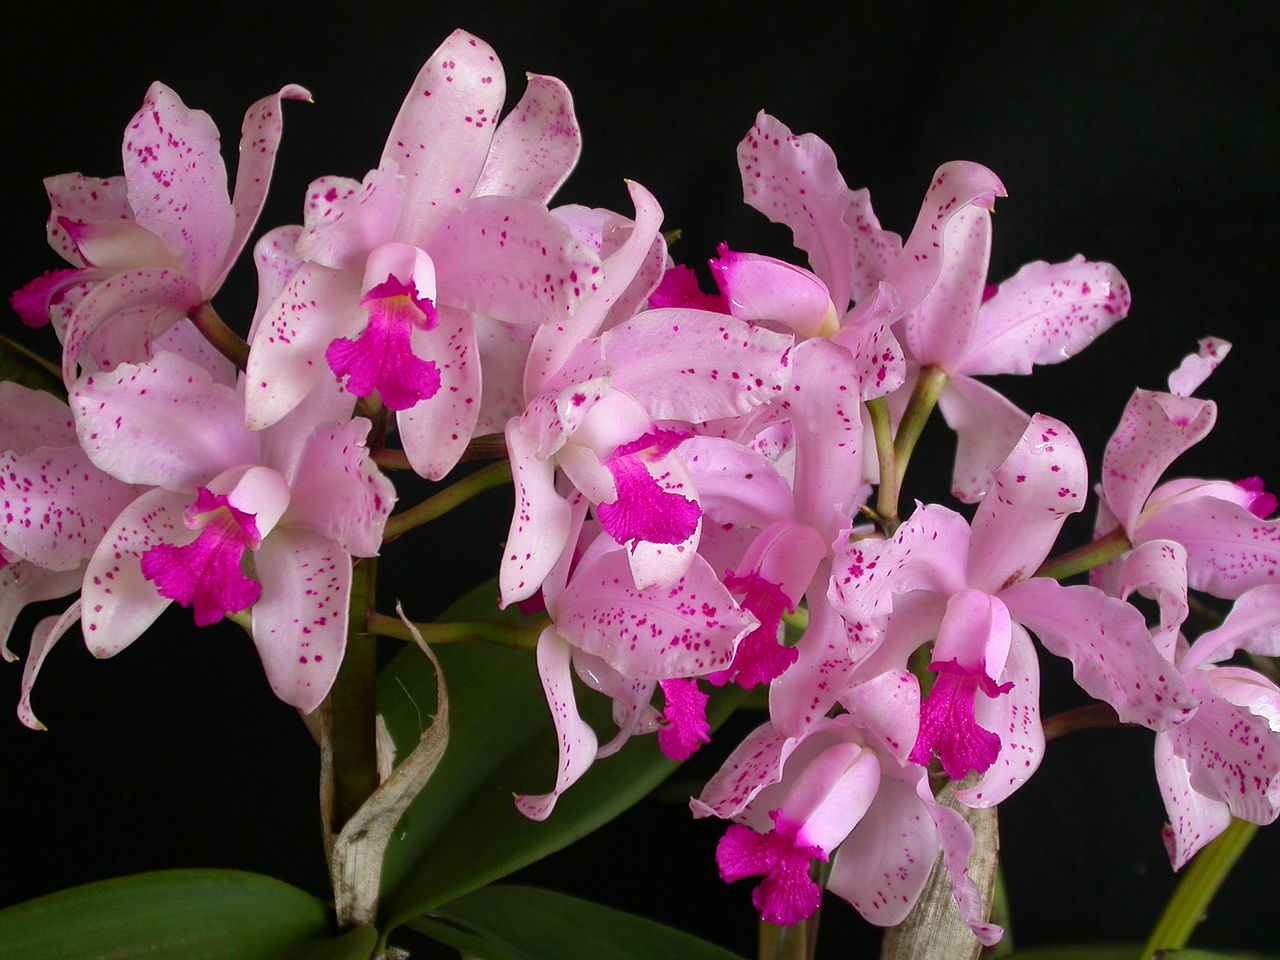 Buscan propiedades medicinales, alimenticias y cosméticas en orquídeas